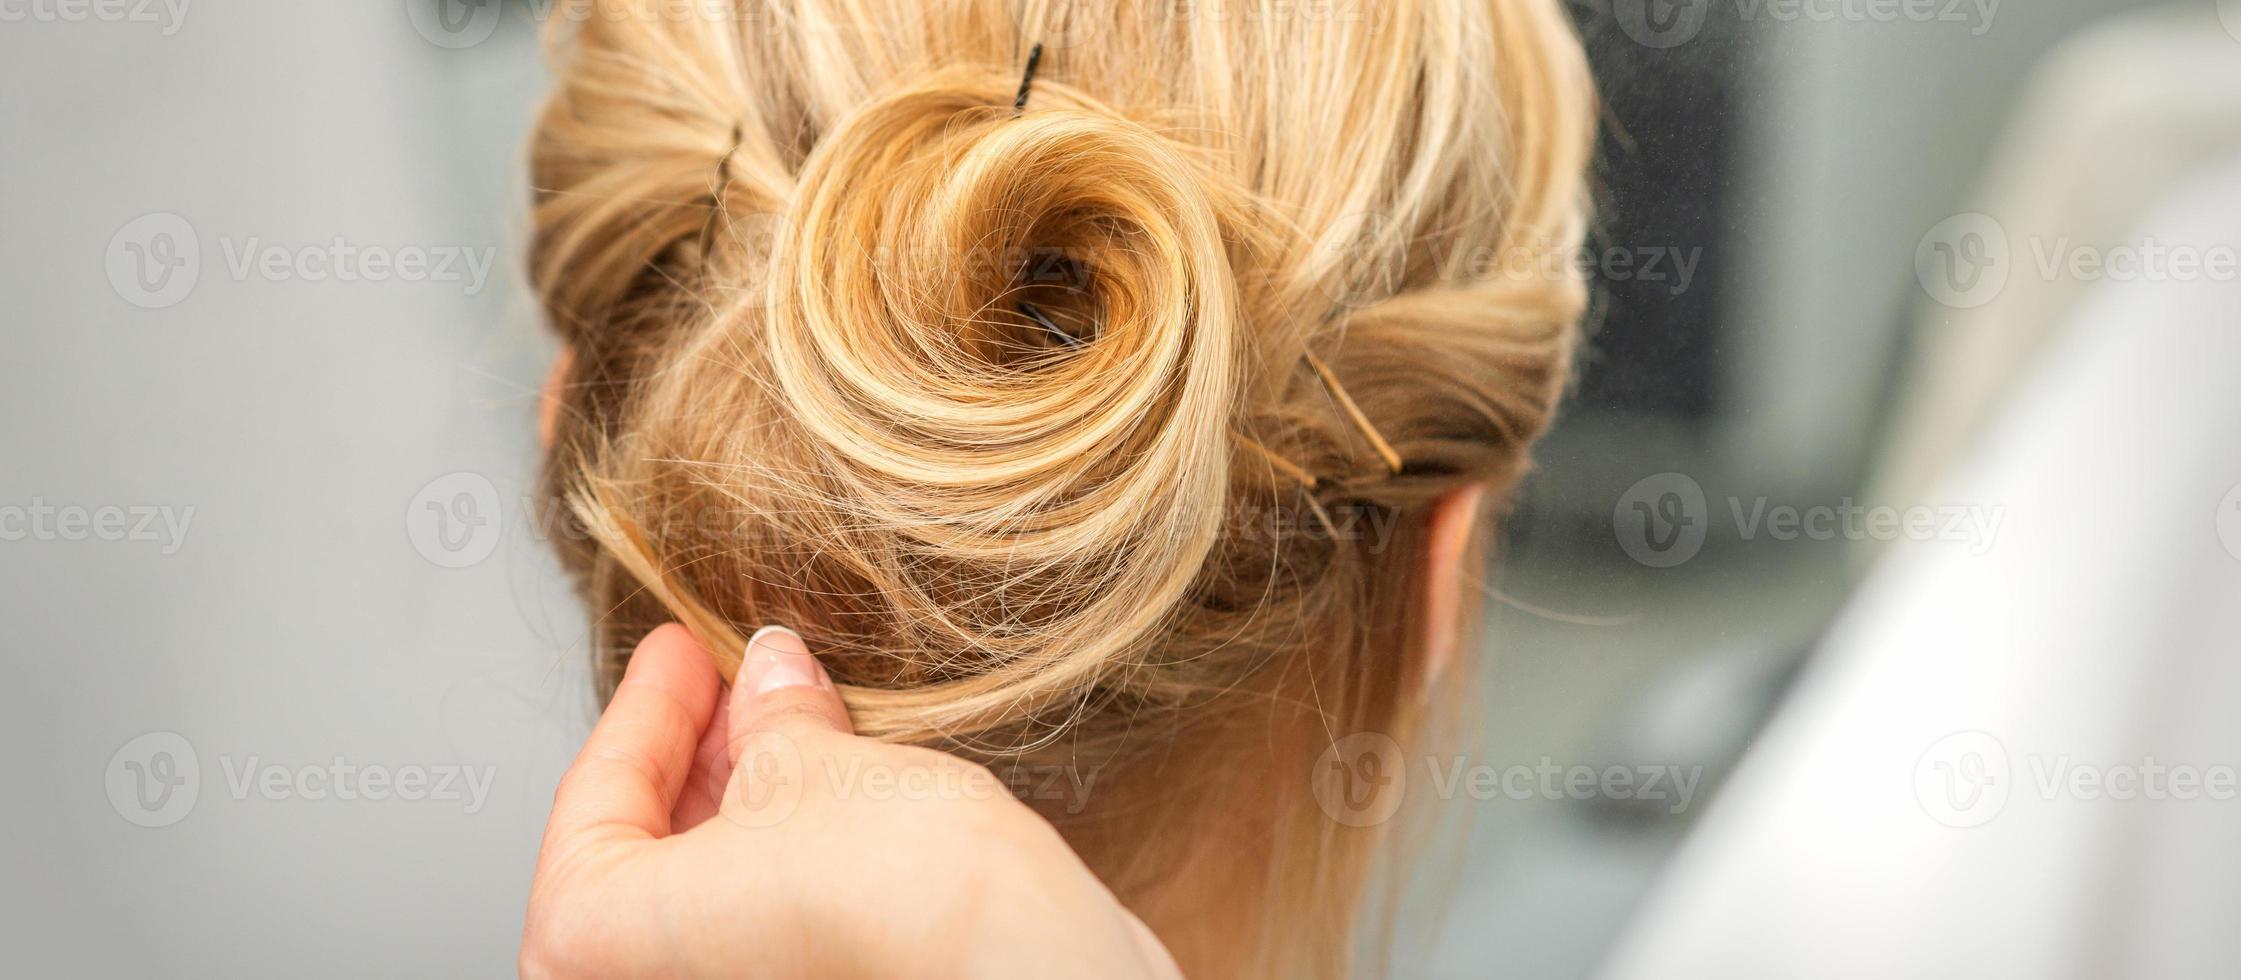 kvinna frisör styling blond hår foto